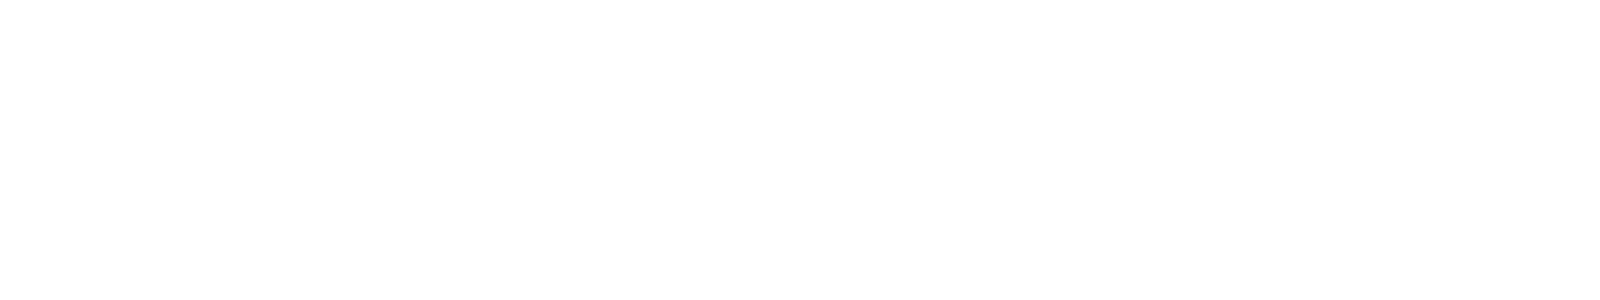 s7law logo biale2 - Pakiet Bursztynowy